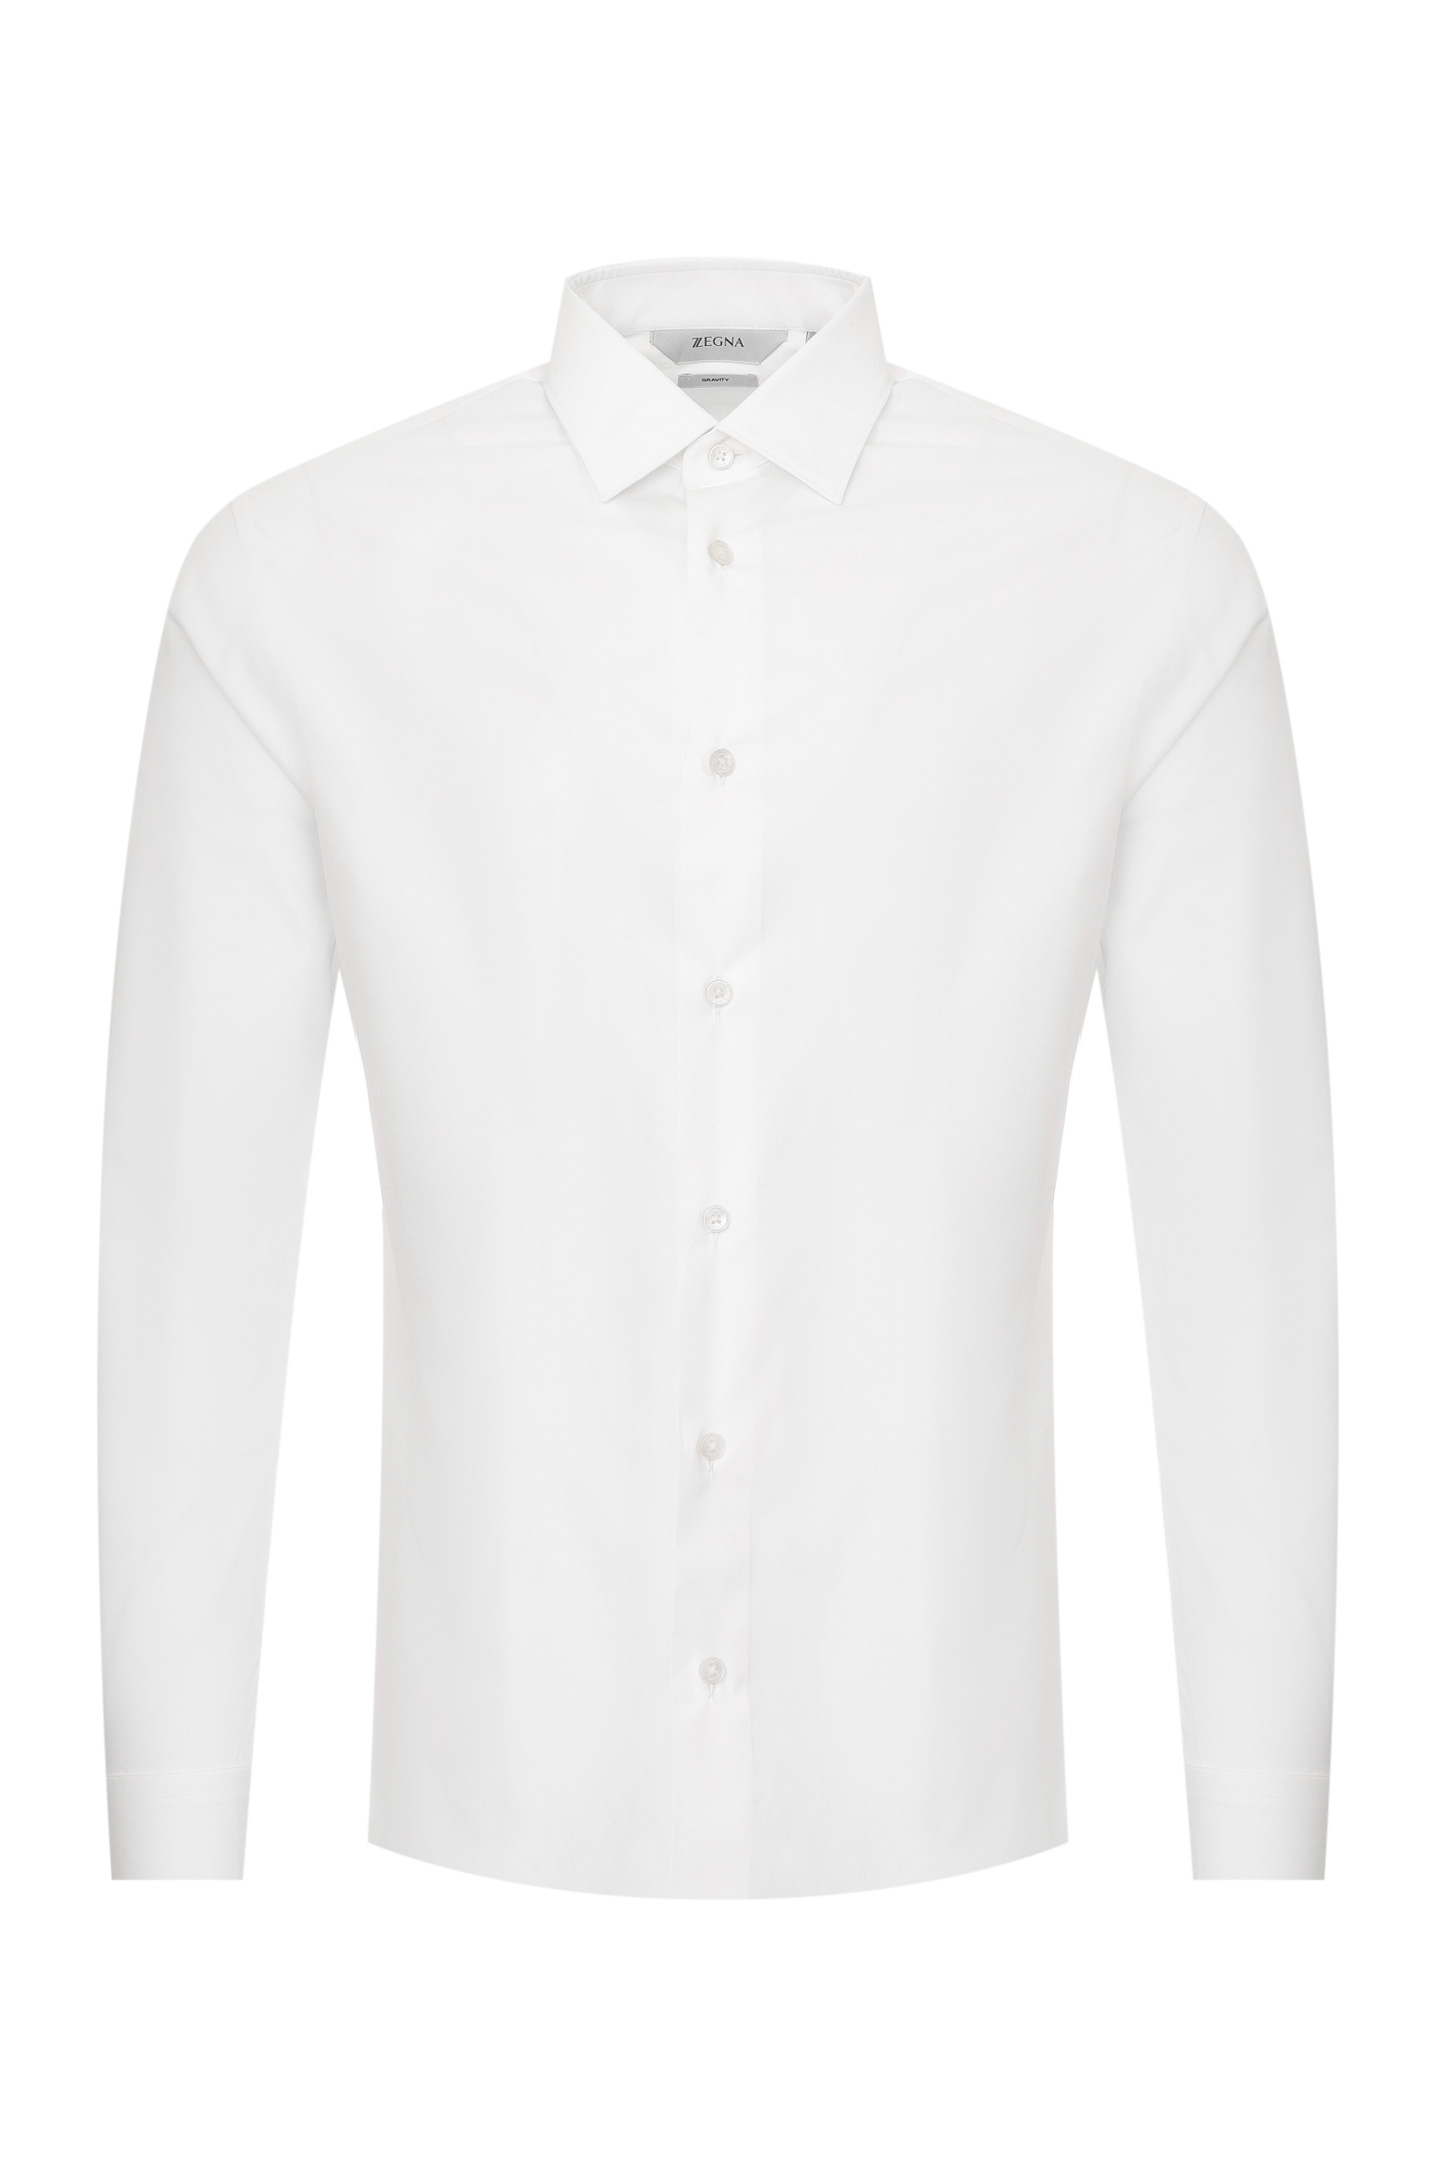 Рубашка Z ZEGNA 305100 ZCRC1, цвет: Белый, Мужской